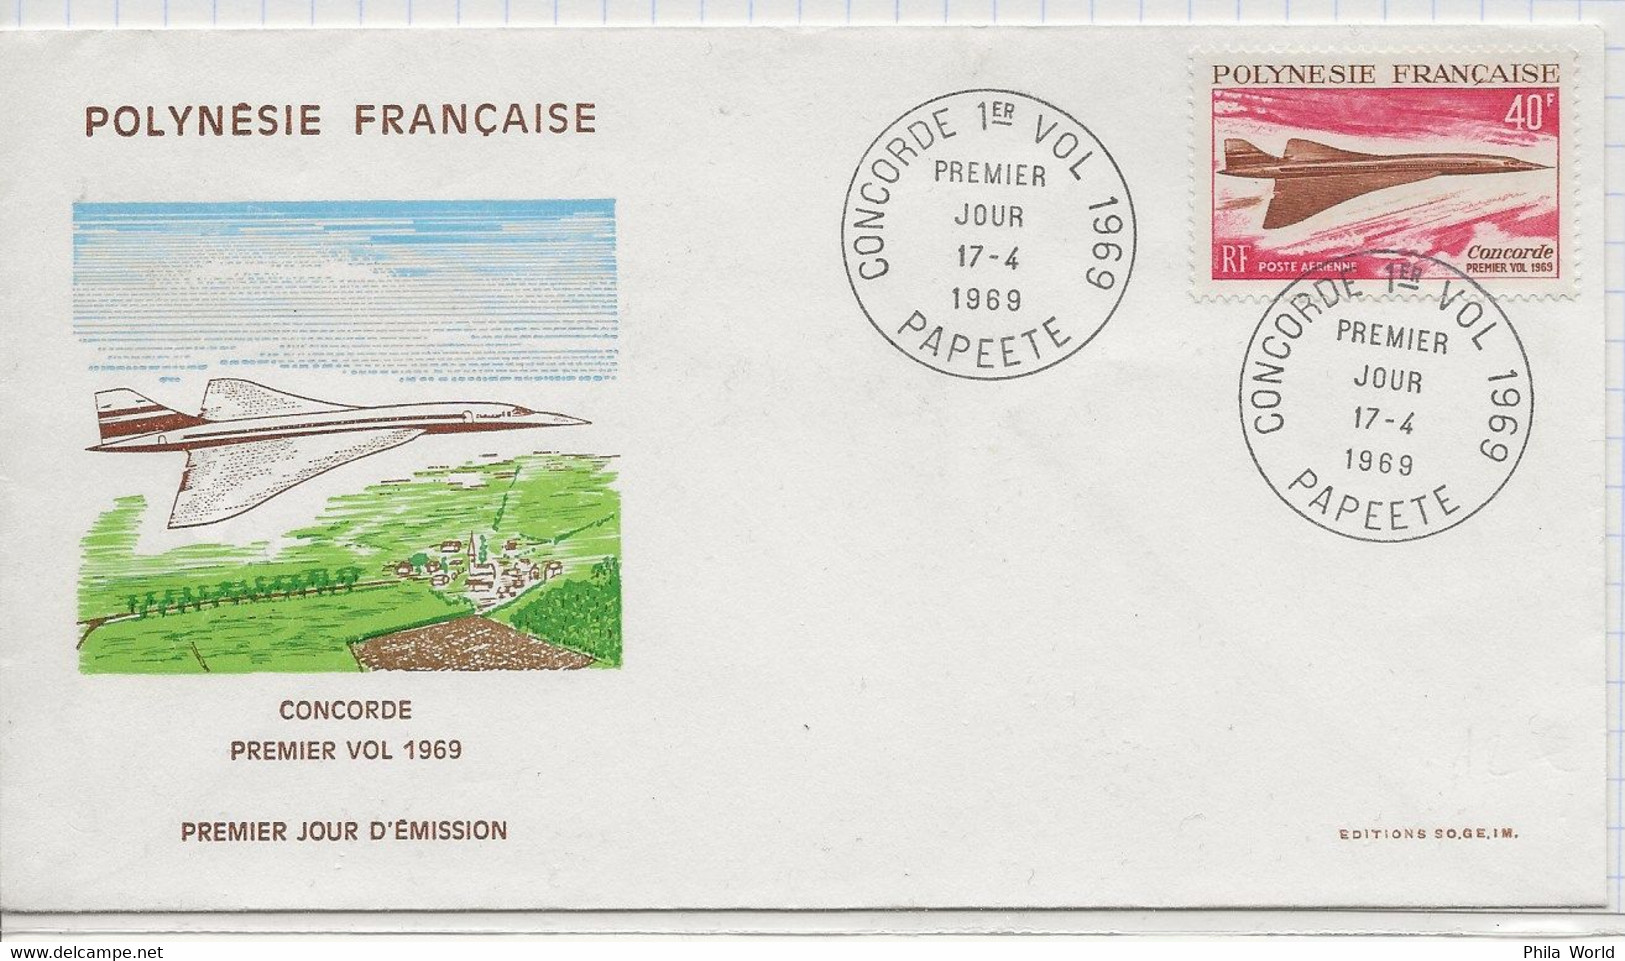 CONCORDE PREMIER VOL 1969 POLYNESIE FRANCAISE ENVELOPPE PREMIER JOUR PAPEETE - Lettres & Documents